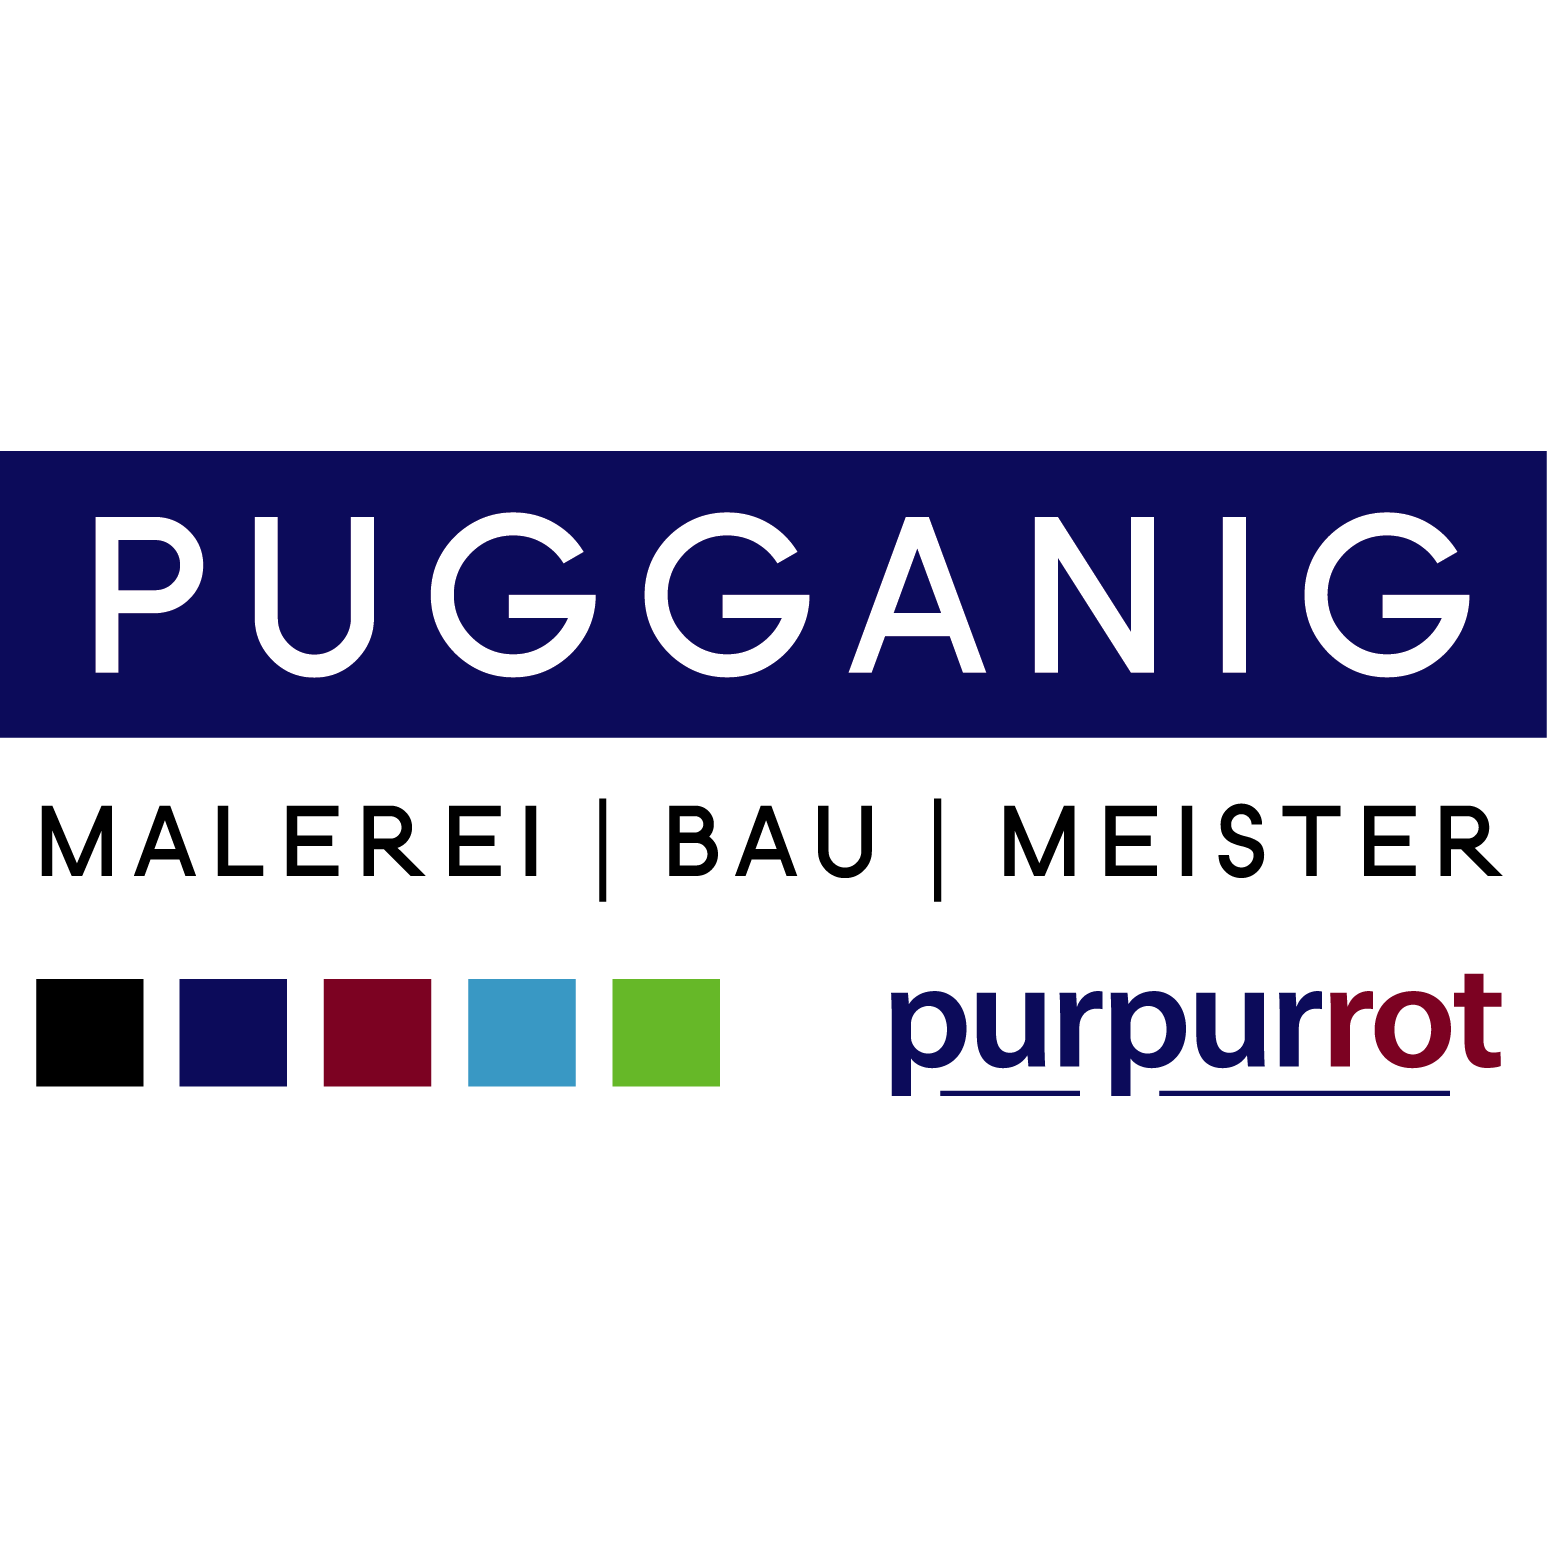 Pugganig Malerei und Bau Meister-GmbH - Painter - St.Veit/Glan - 04212 5307 Austria | ShowMeLocal.com